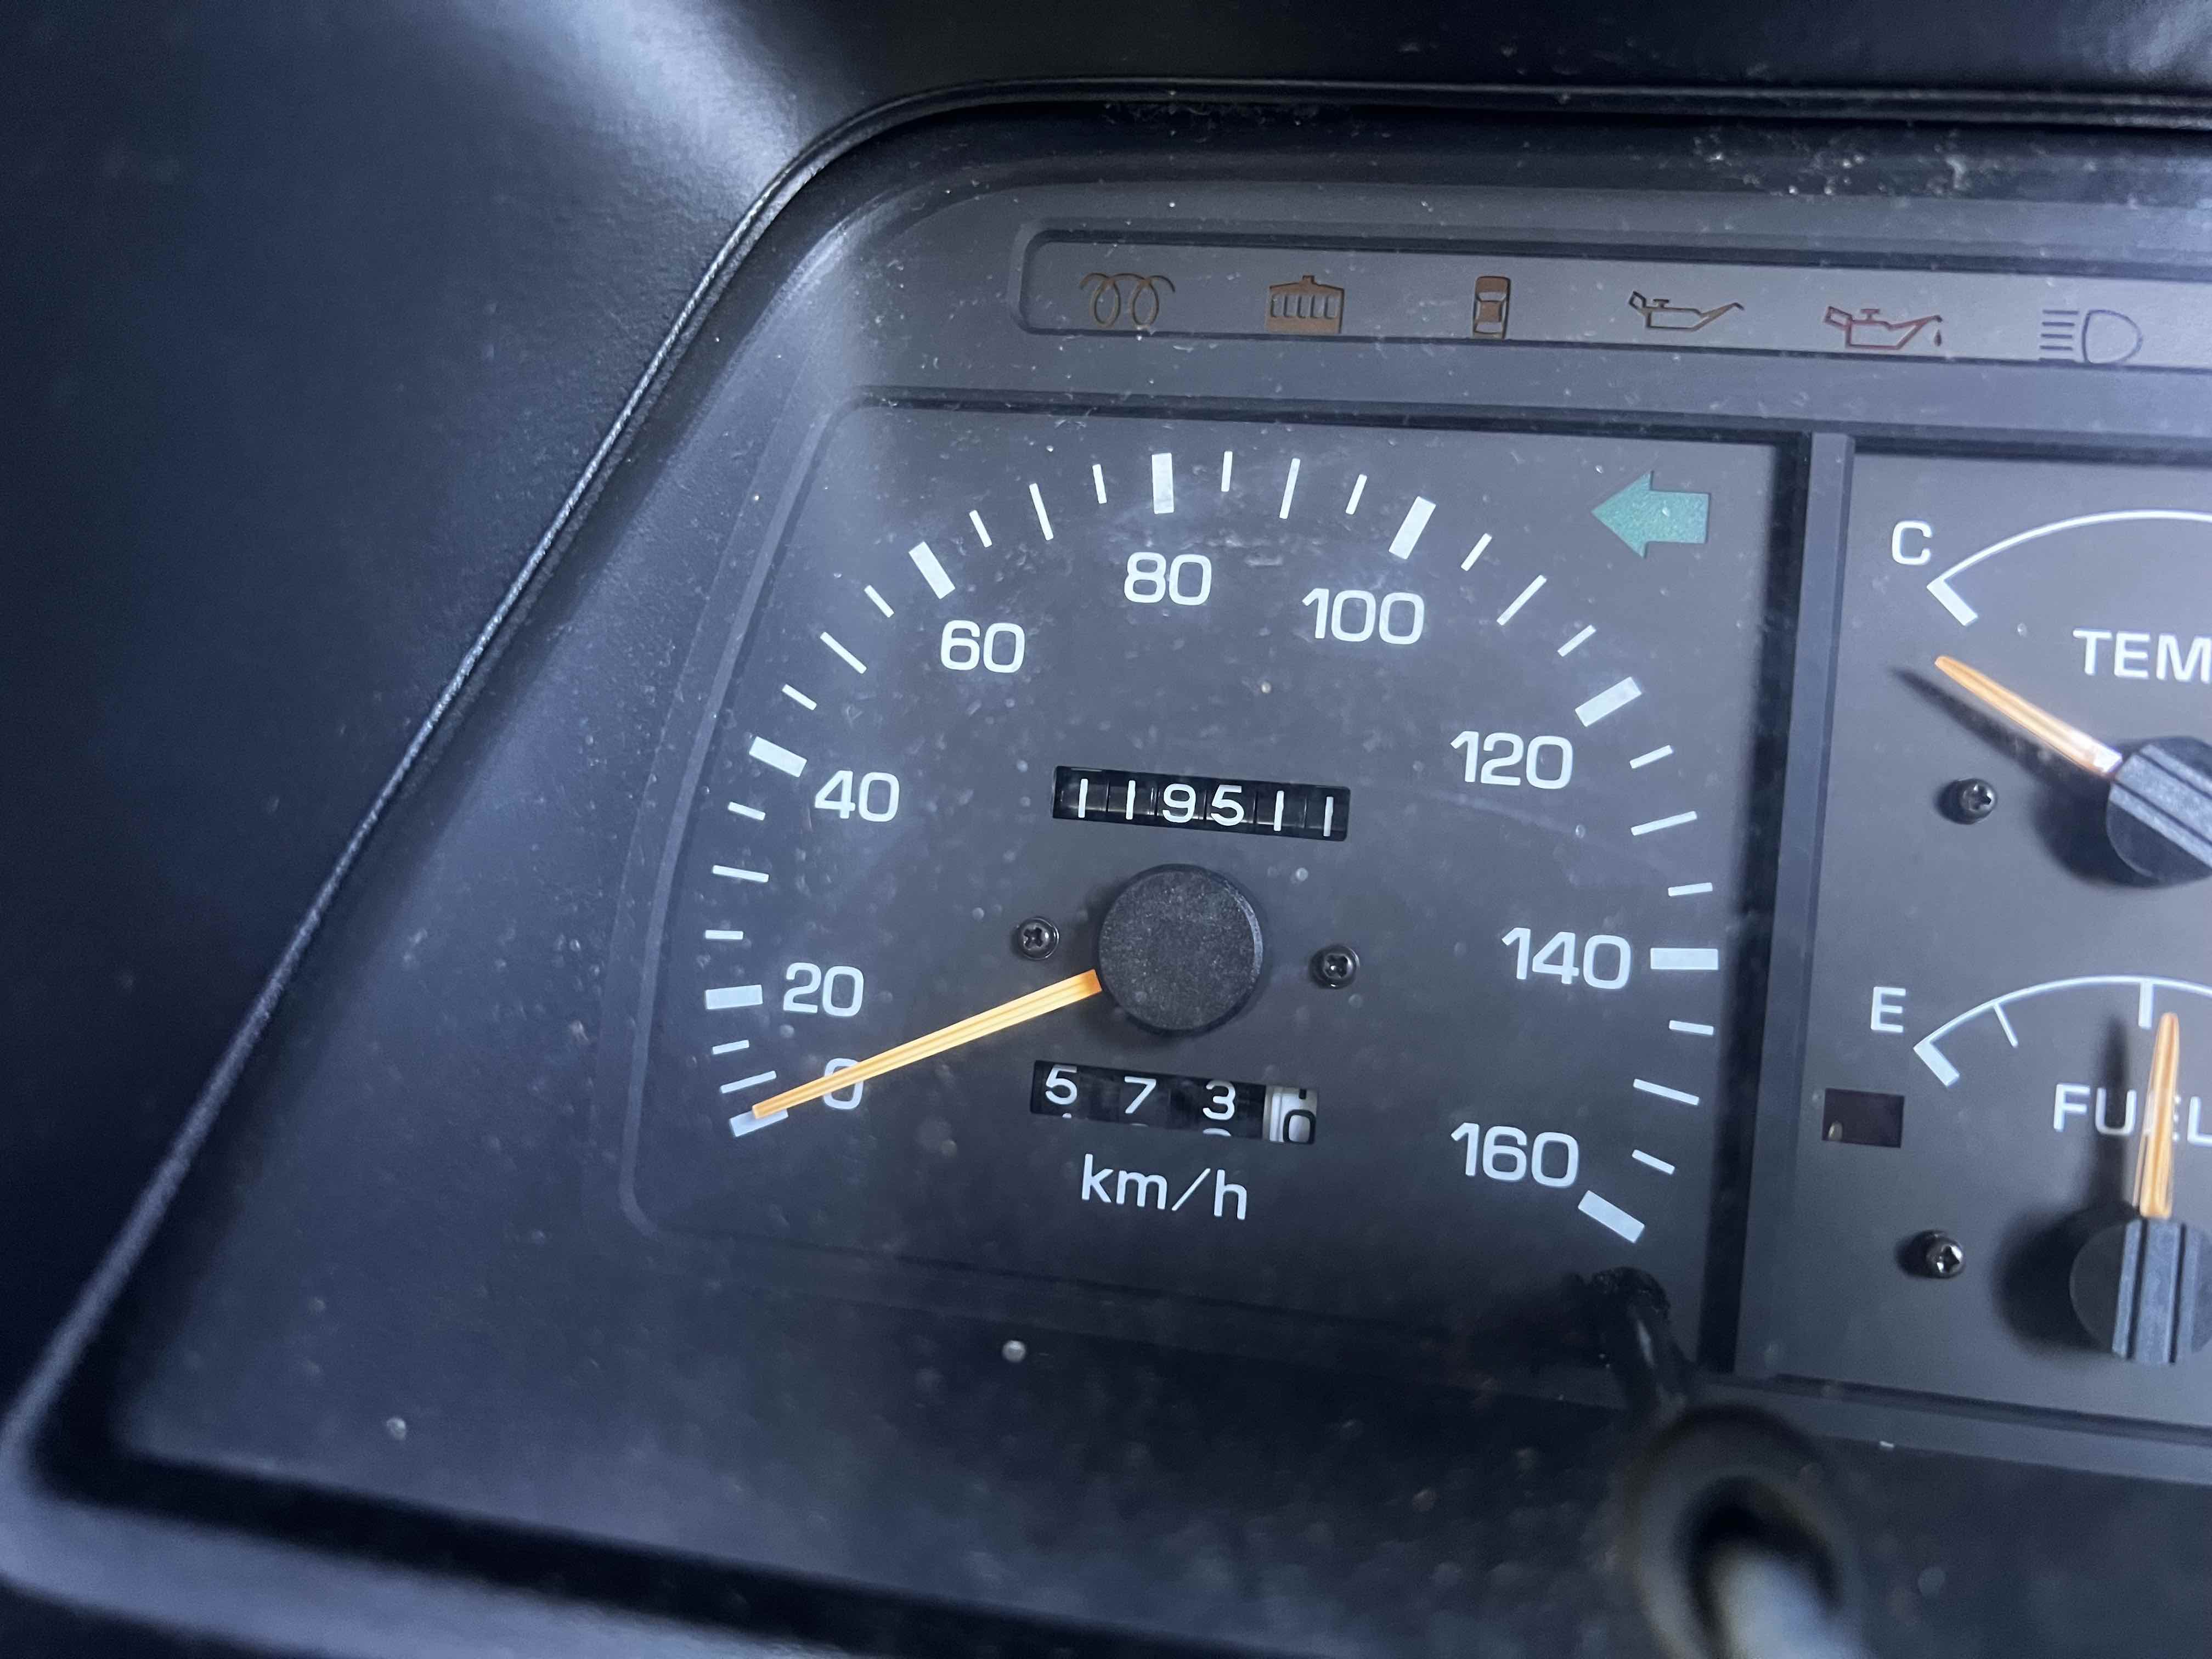 Actual mileage - van driven over 150 miles 